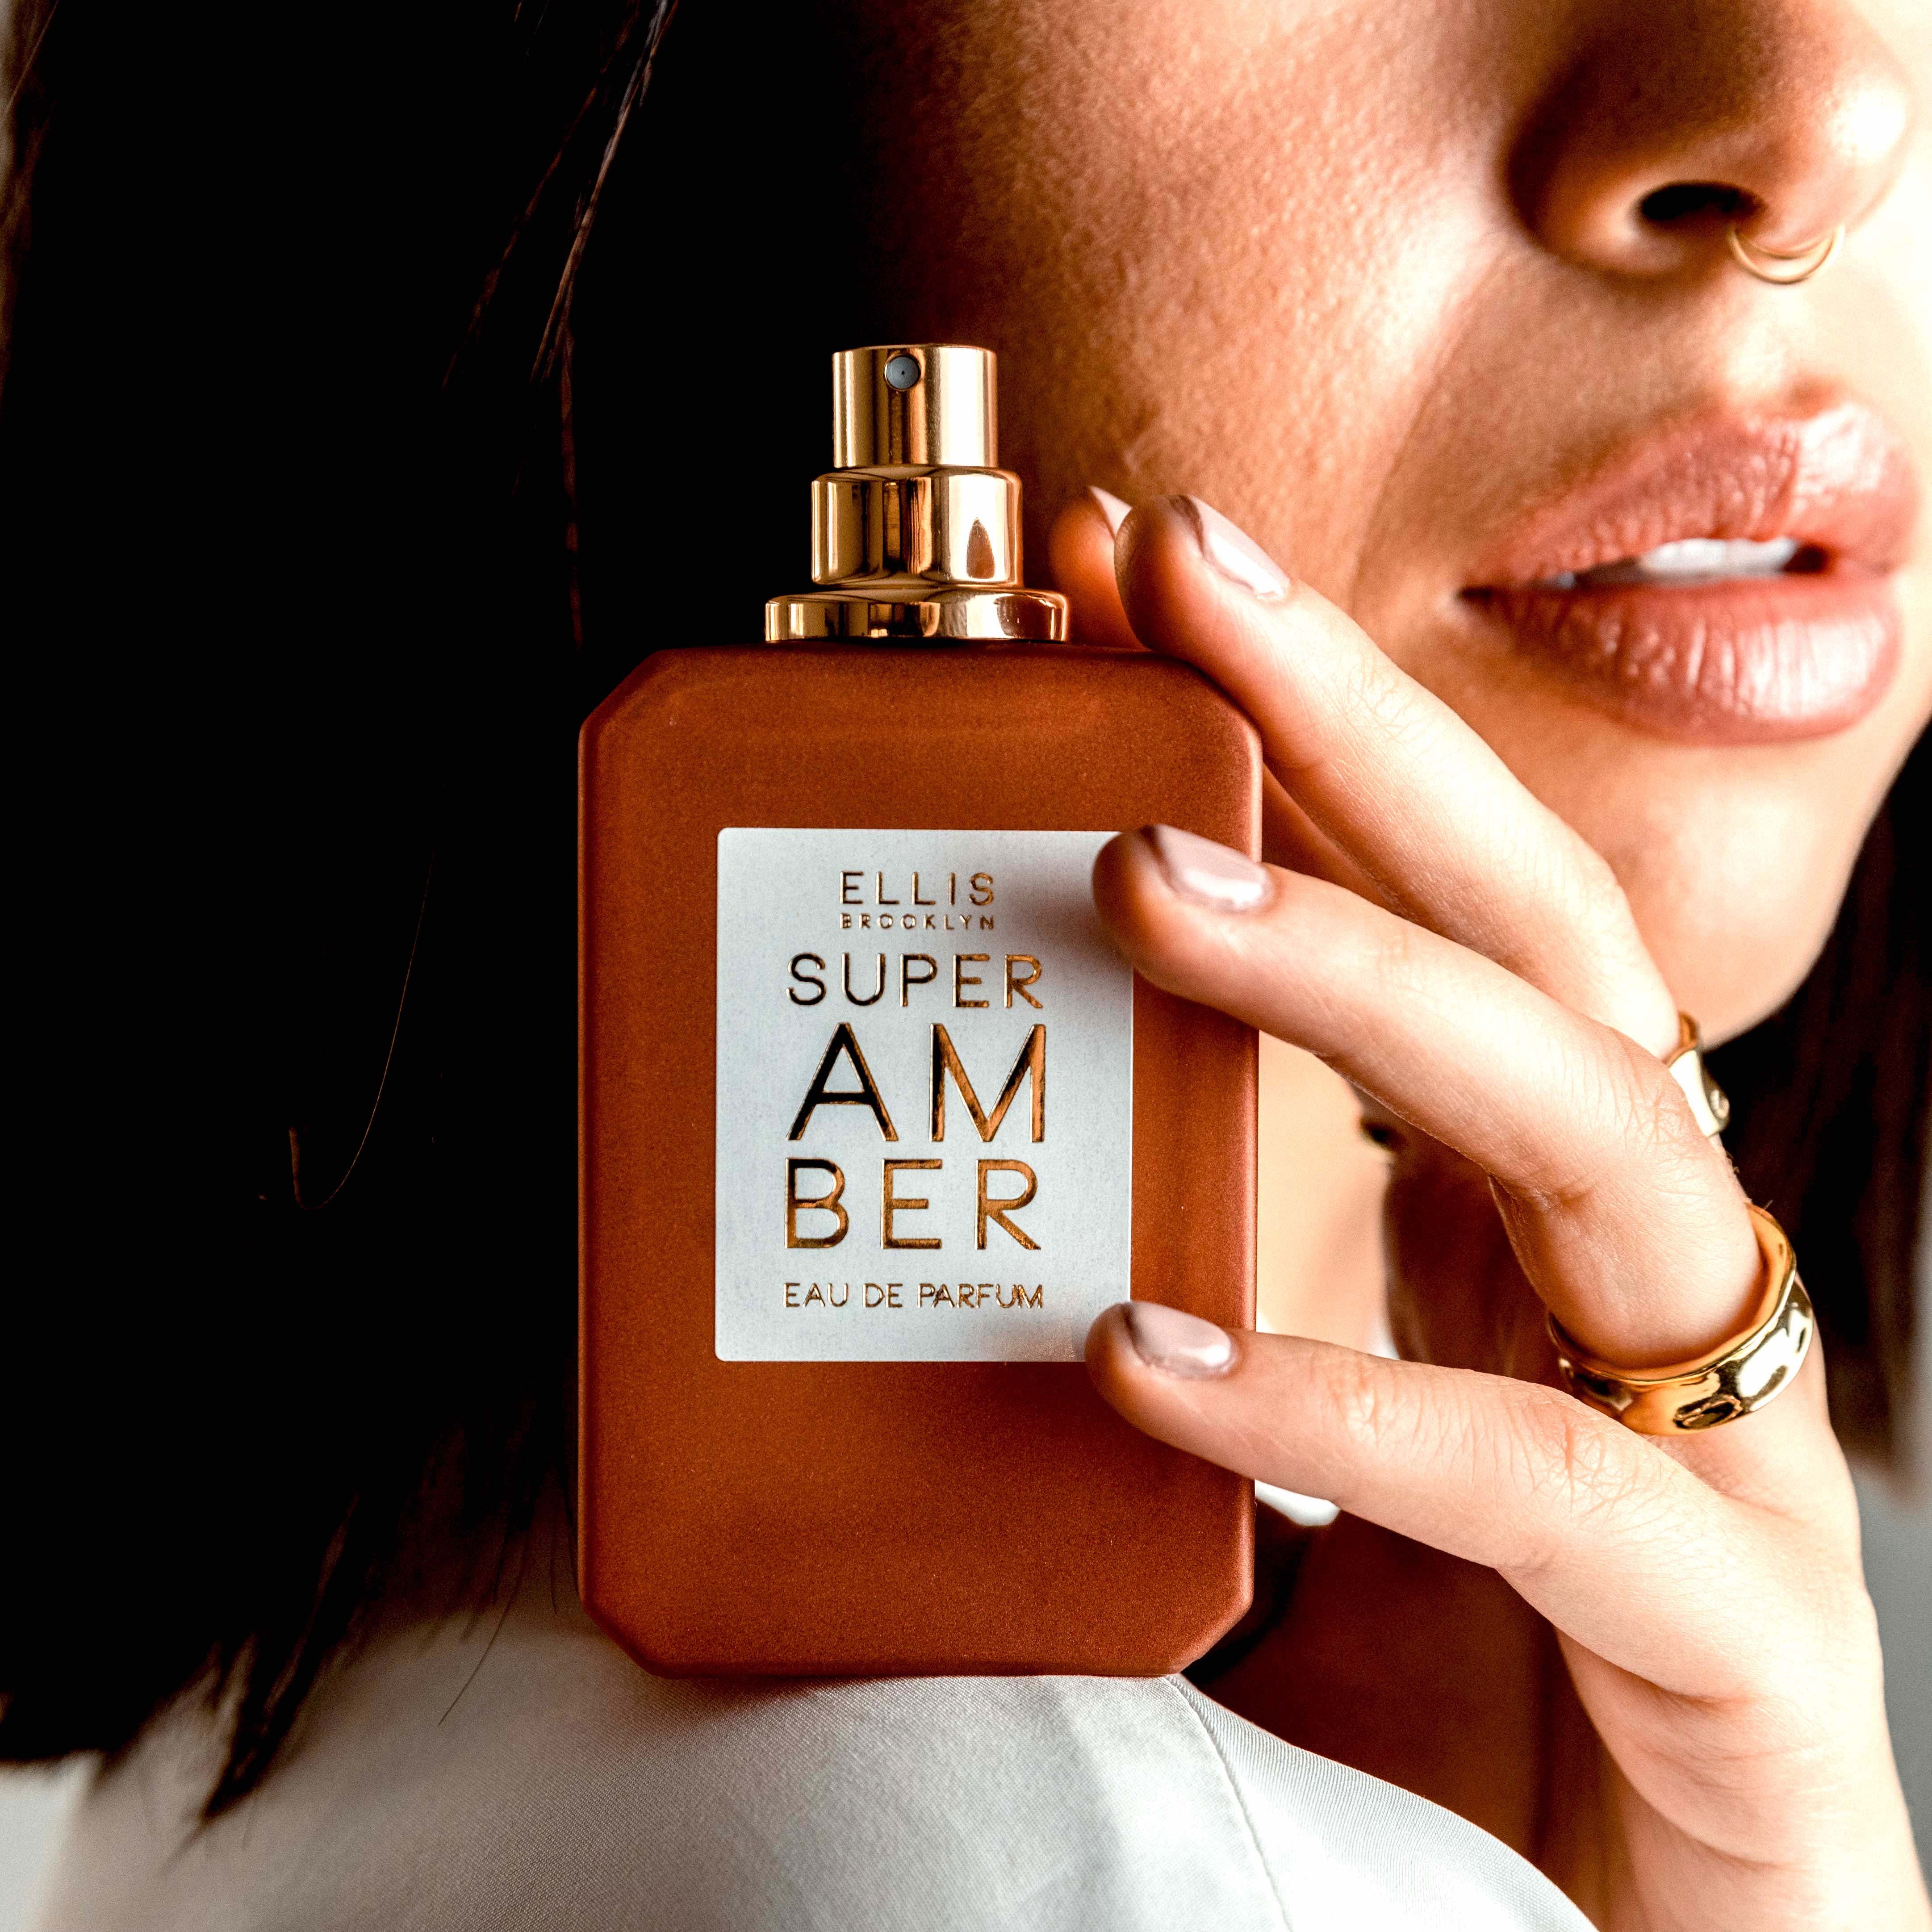 Amber Eau De Parfum Spray 50 Ml